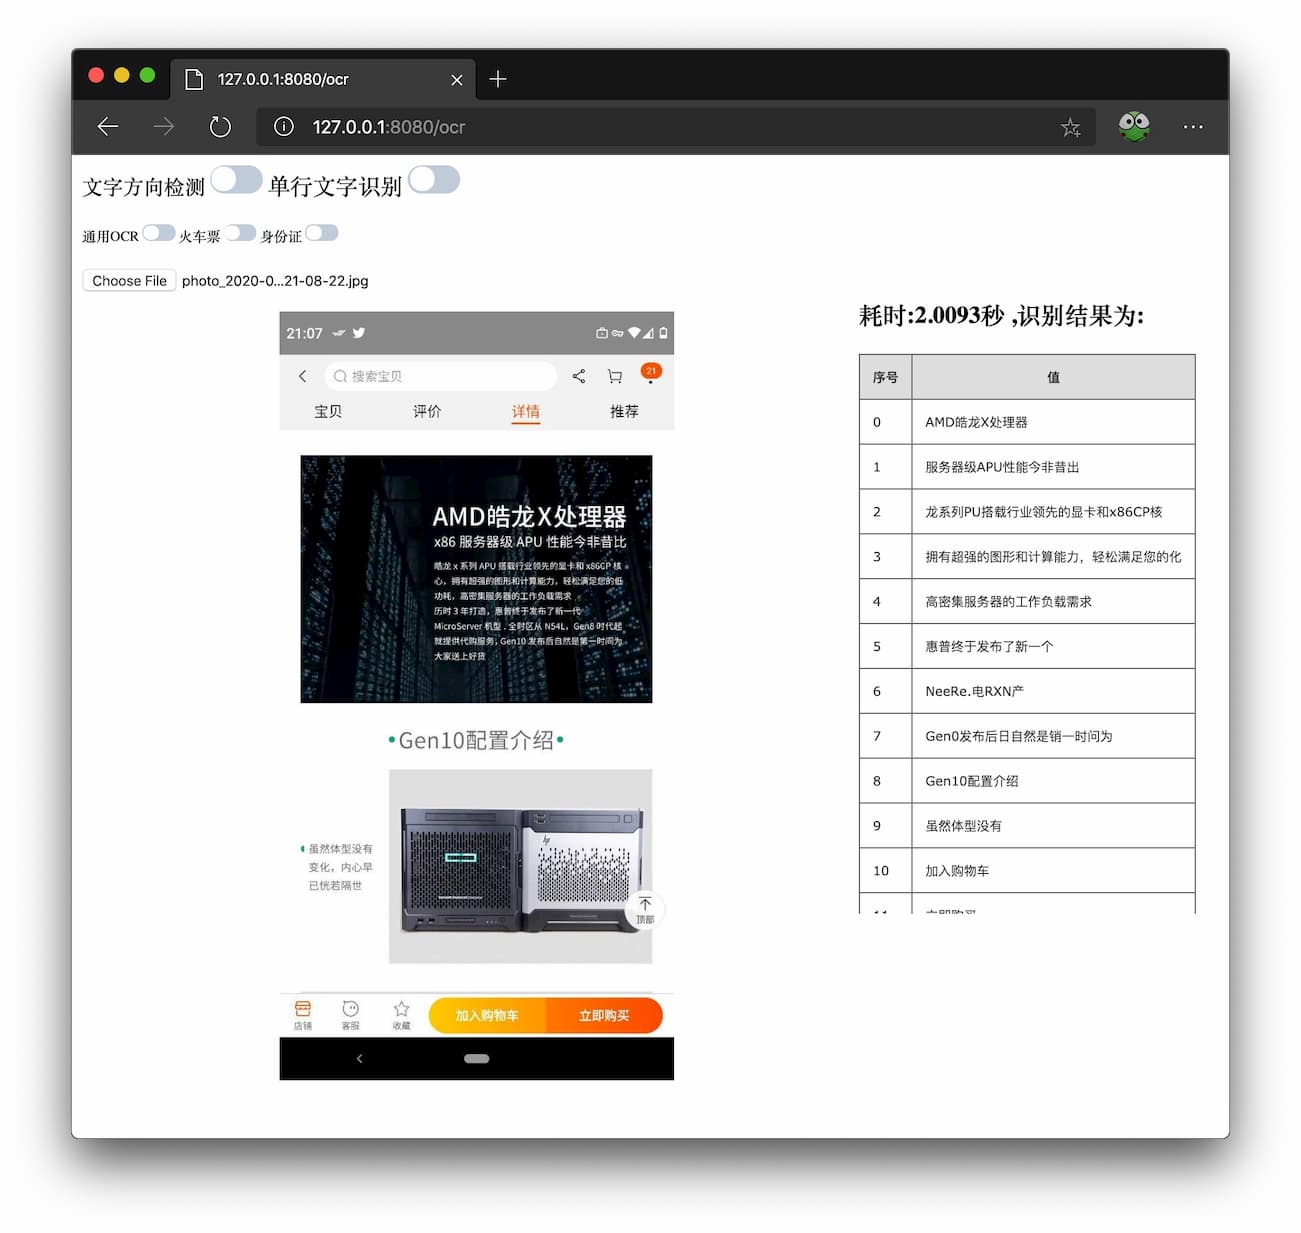 chineseocr_lite - 超轻量级中文 OCR，本地文字识别工具 3